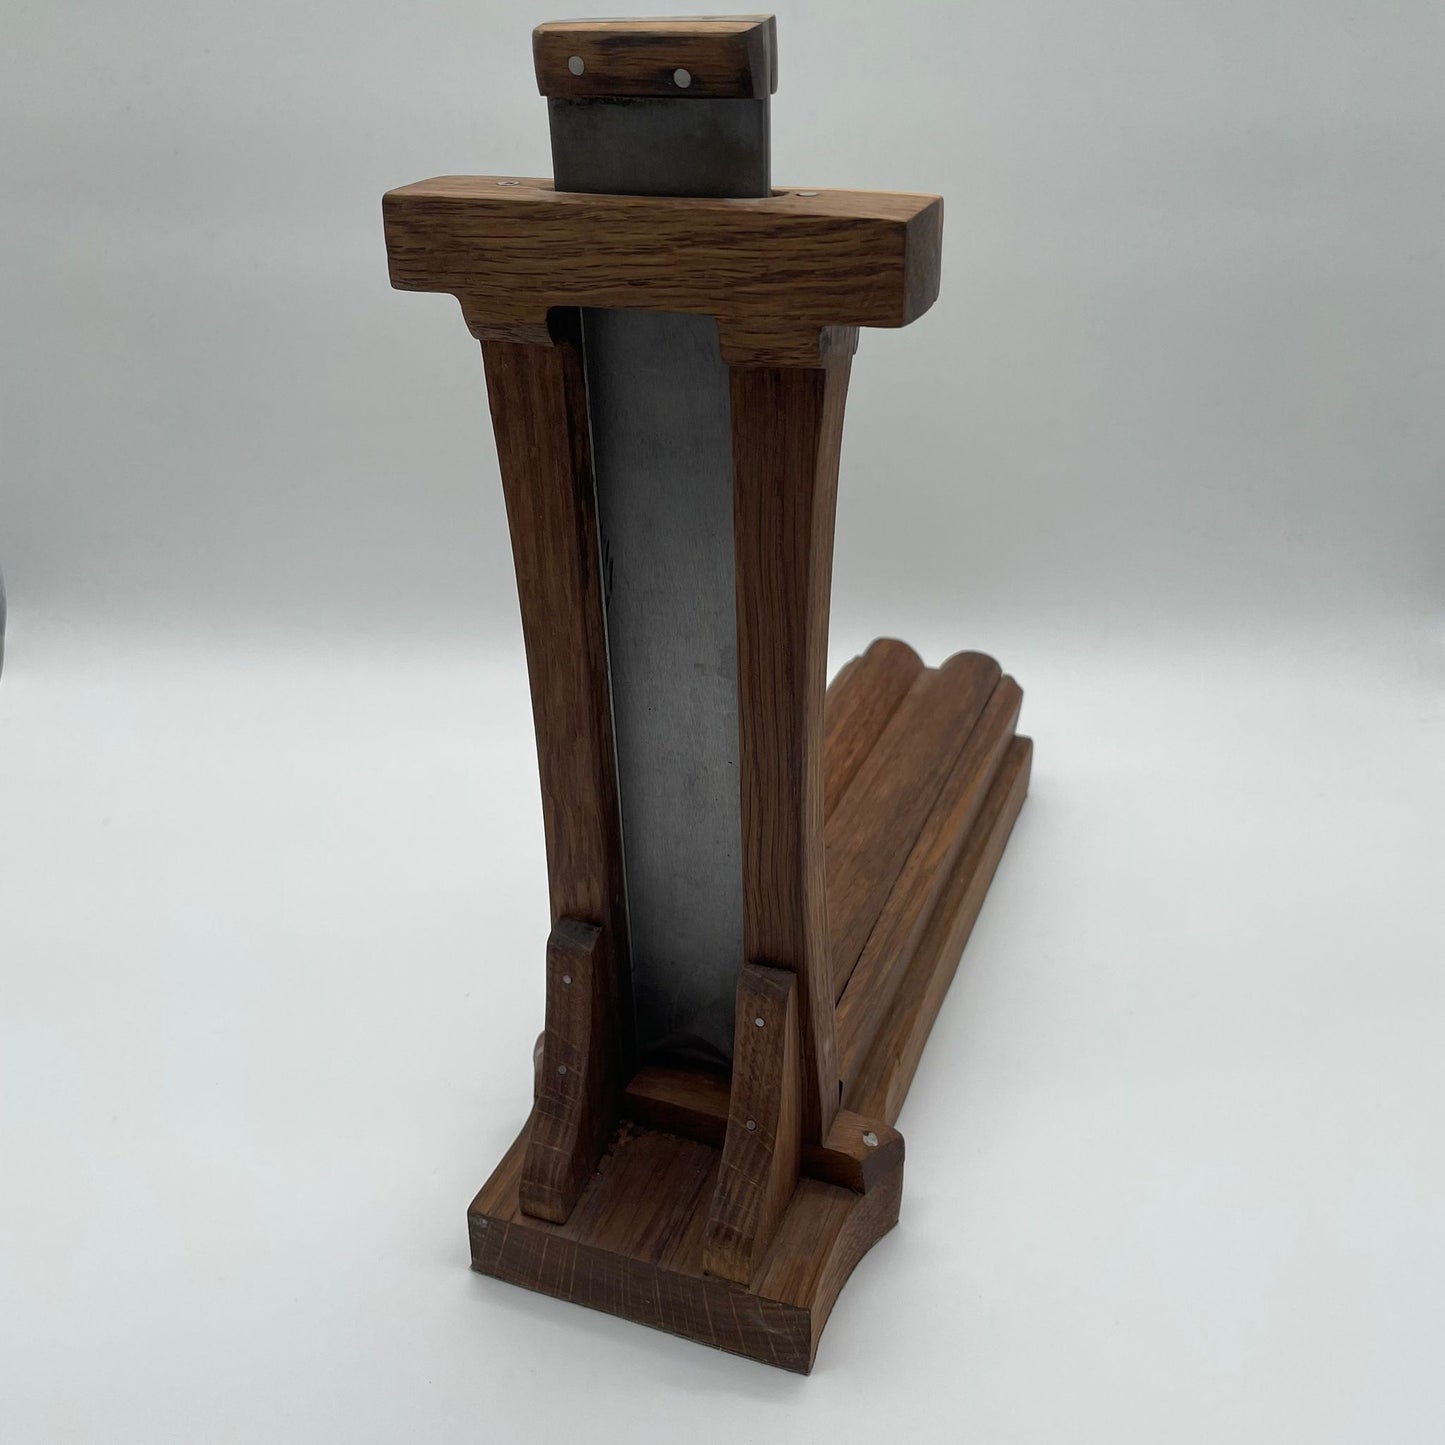 
                  
                    Zigarren Schneider Fallbeil oder Guillotine (Cutter) handgefertigtes Unikat vom Künstler aus Holz
                  
                